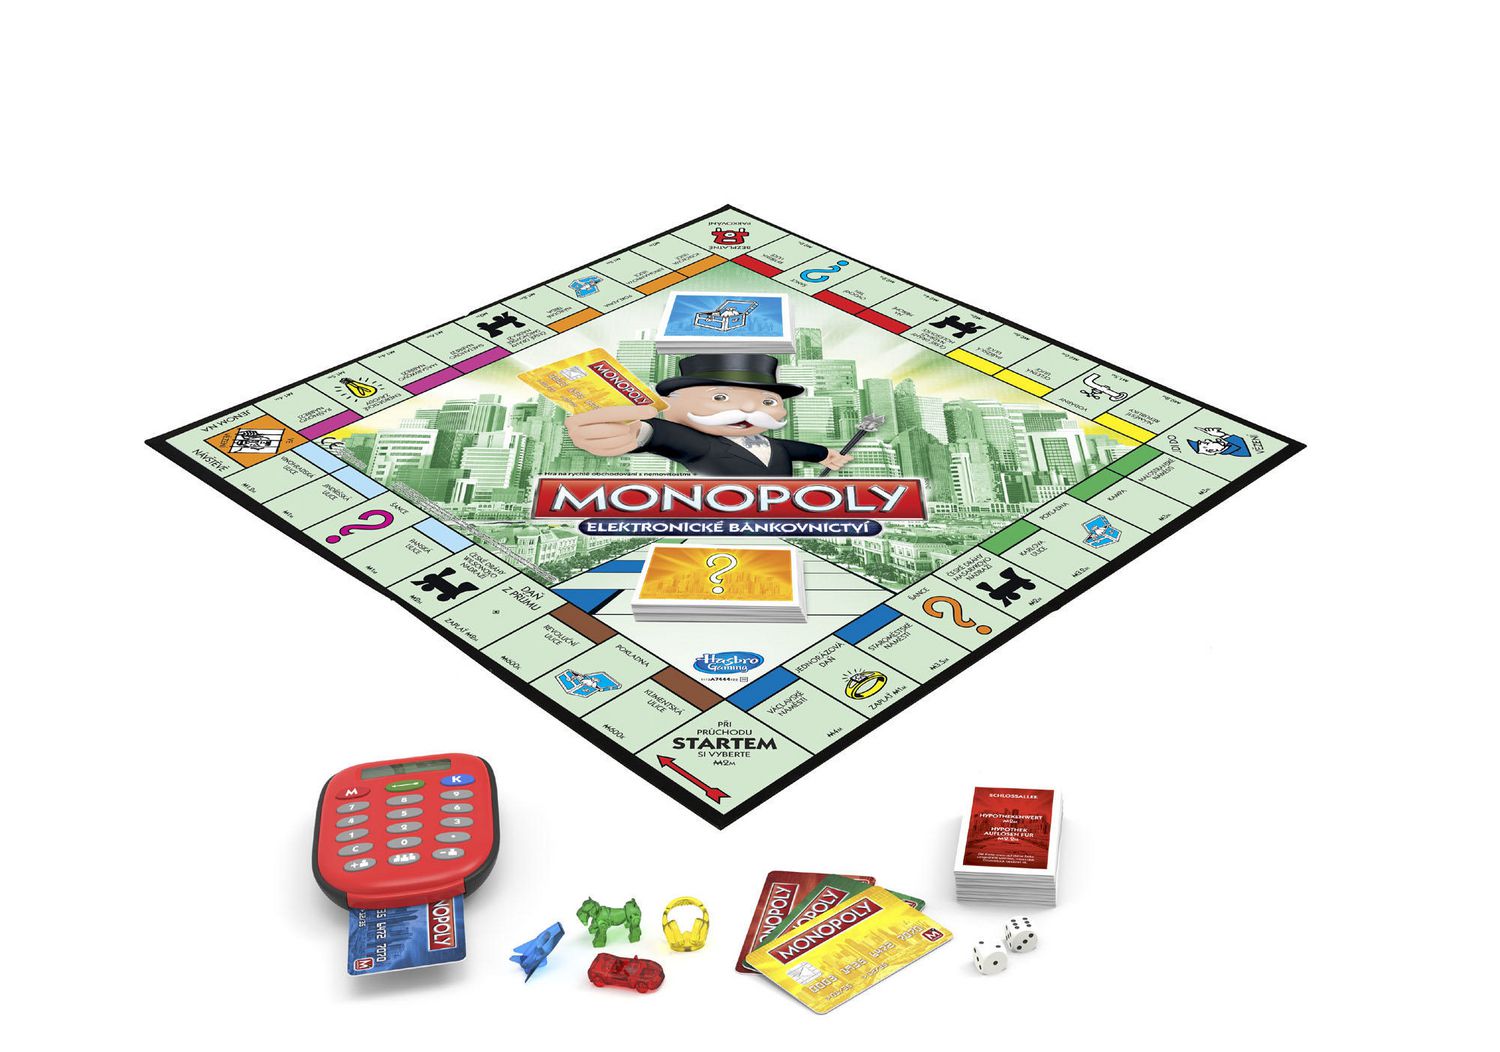 Fini la triche, la banque de Monopoly désormais gérée vocalement